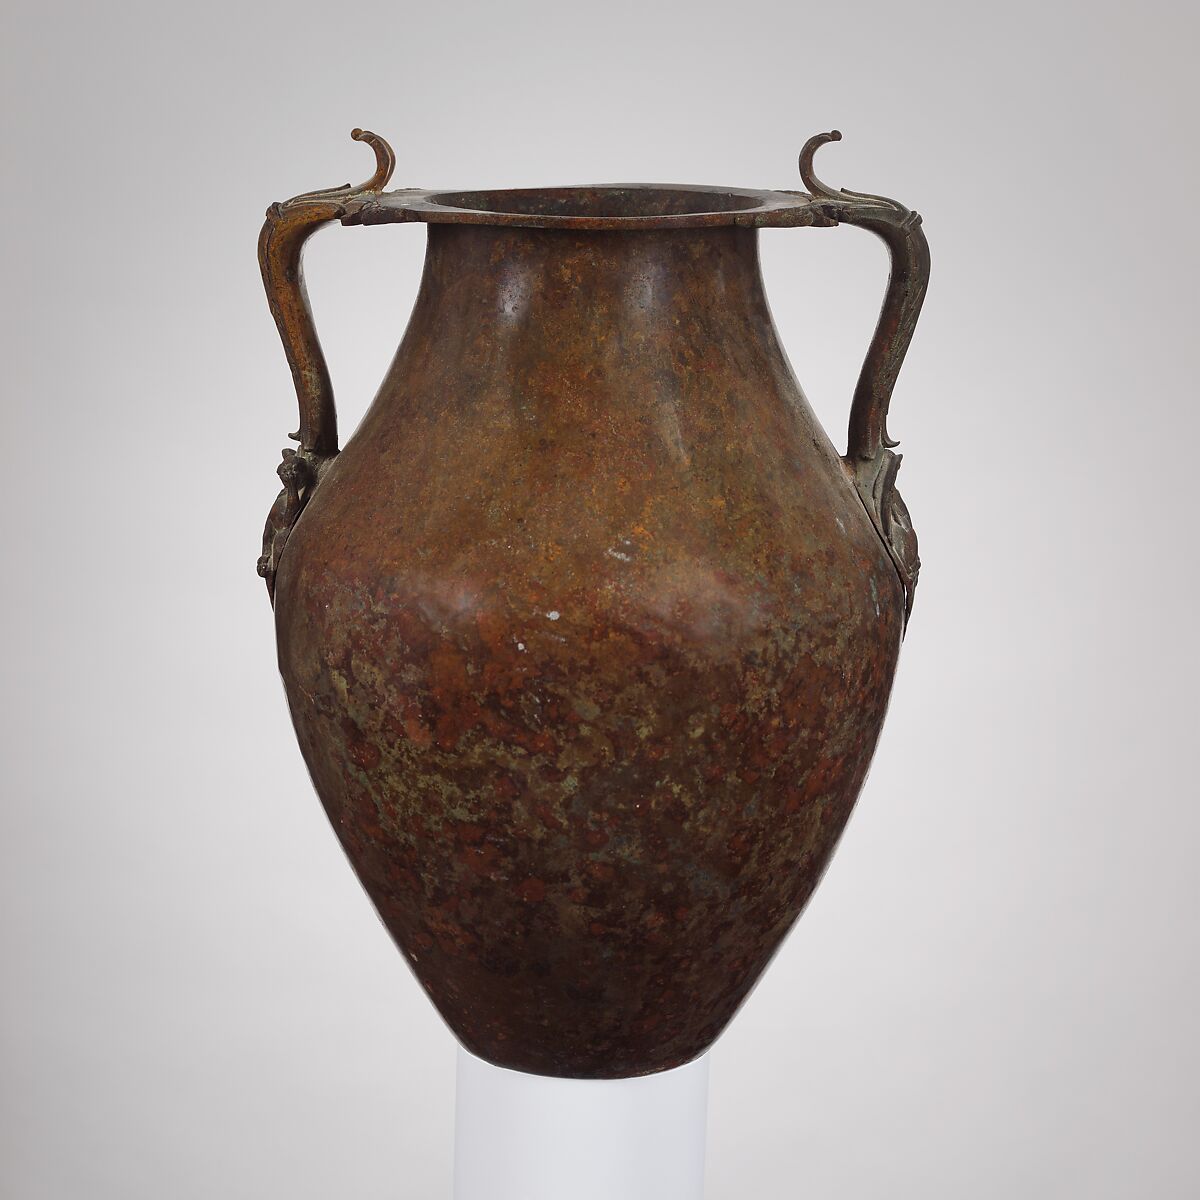 Bronze jar with two handles, Bronze, Roman 